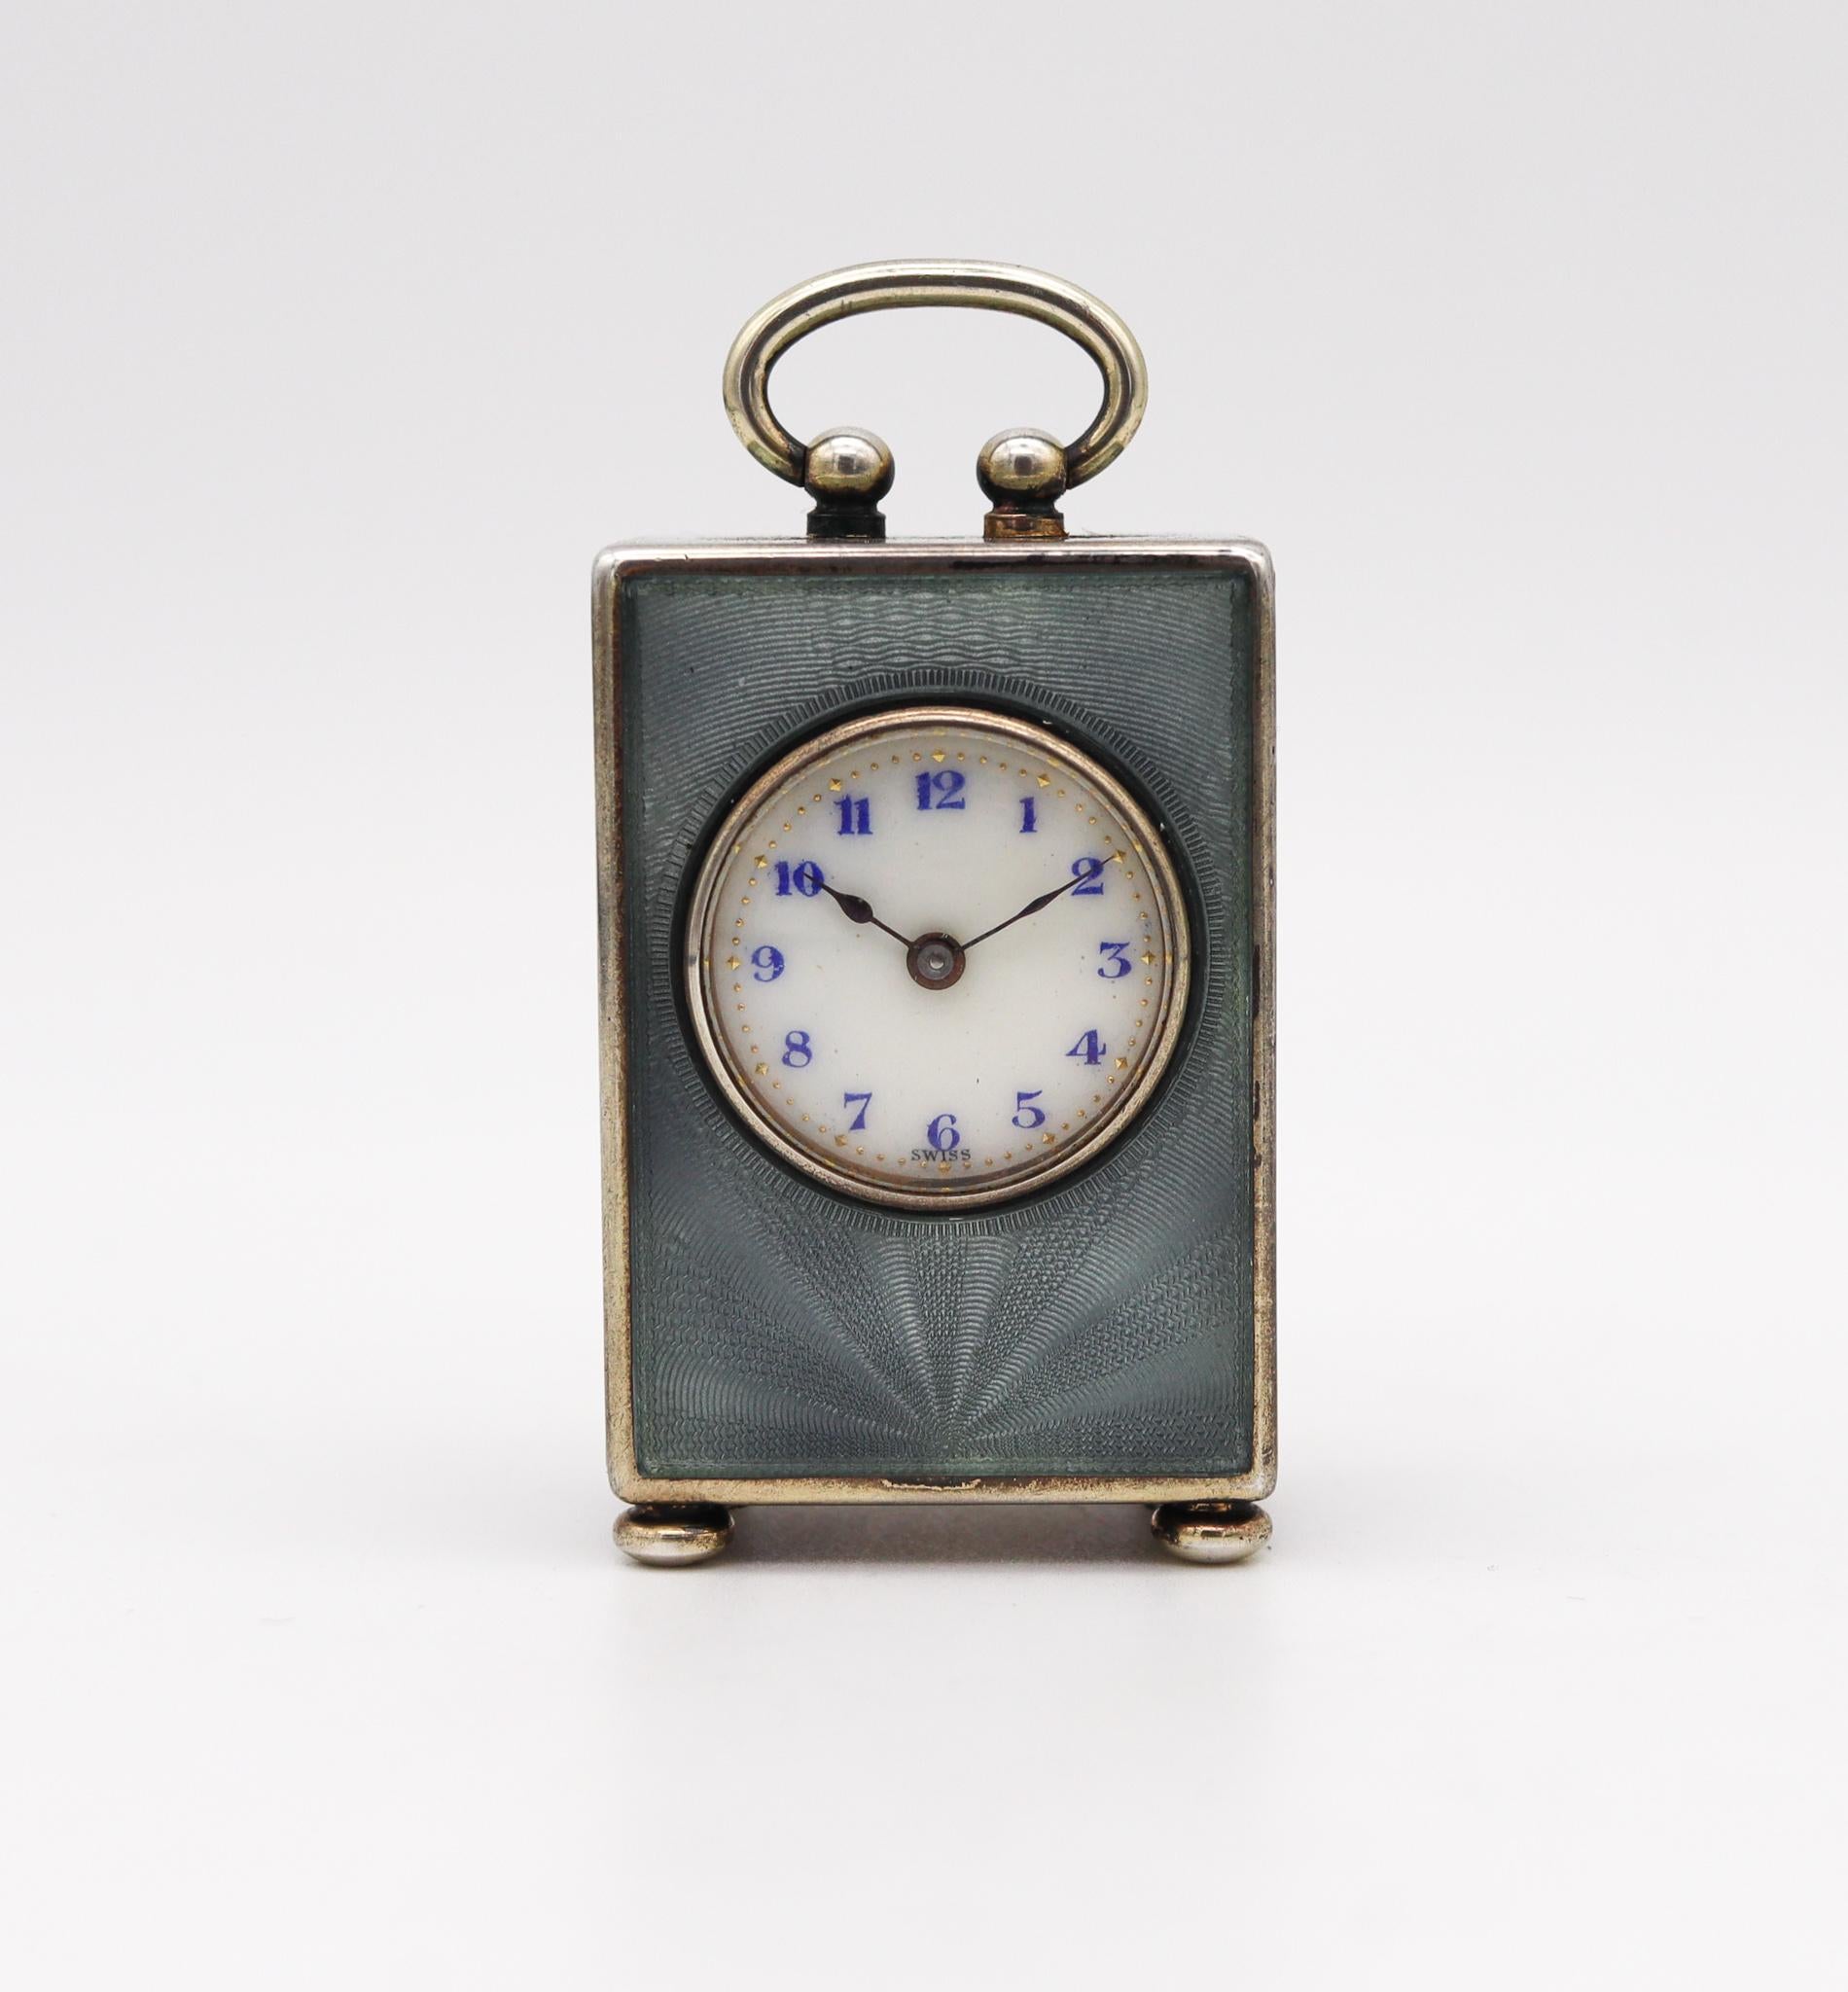 Eine Edwardianische Miniatur-Reiseuhr, entworfen von Valmé.

Wunderschöne und seltene Miniatur-Reisewagenuhr, hergestellt in Genf von der Valmé Swiss Co. und der Concord Watch Co. Diese kleine antike Uhr ist eine Ausnahmeerscheinung, die in der Zeit